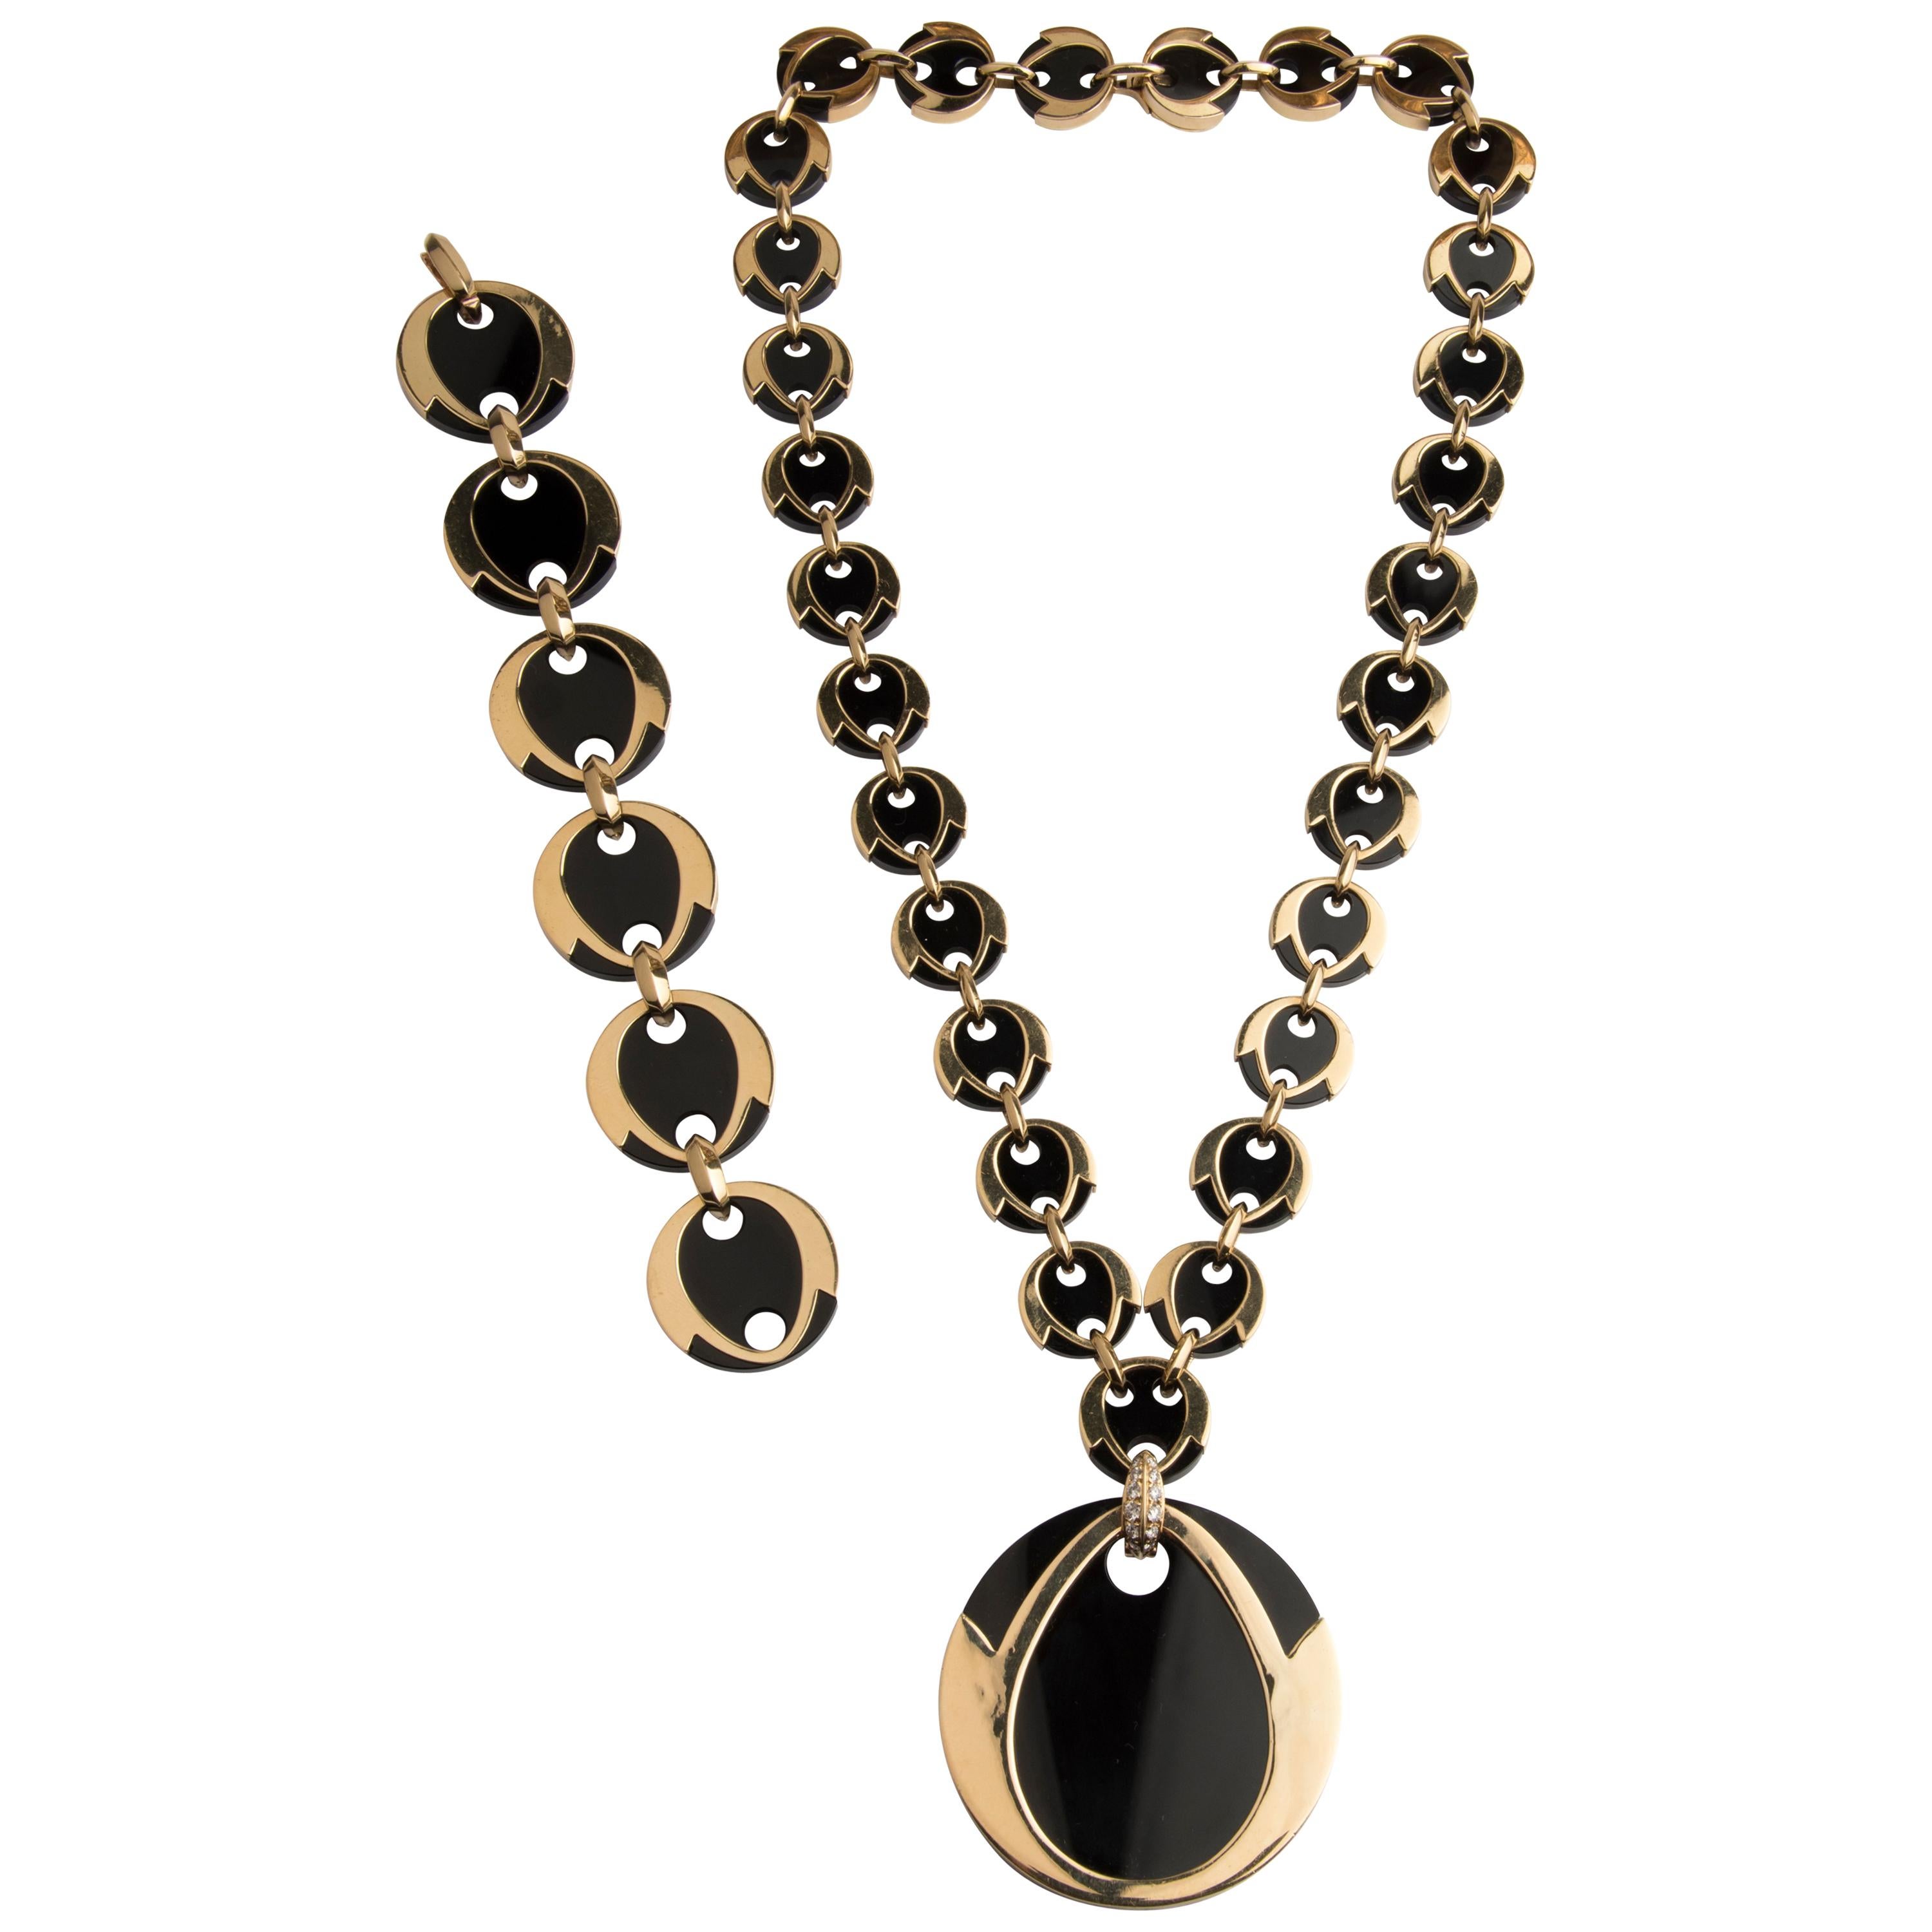 Boucheron 18 Karat Gold Diamond and Onyx Bracelet and Necklace Parure For Sale